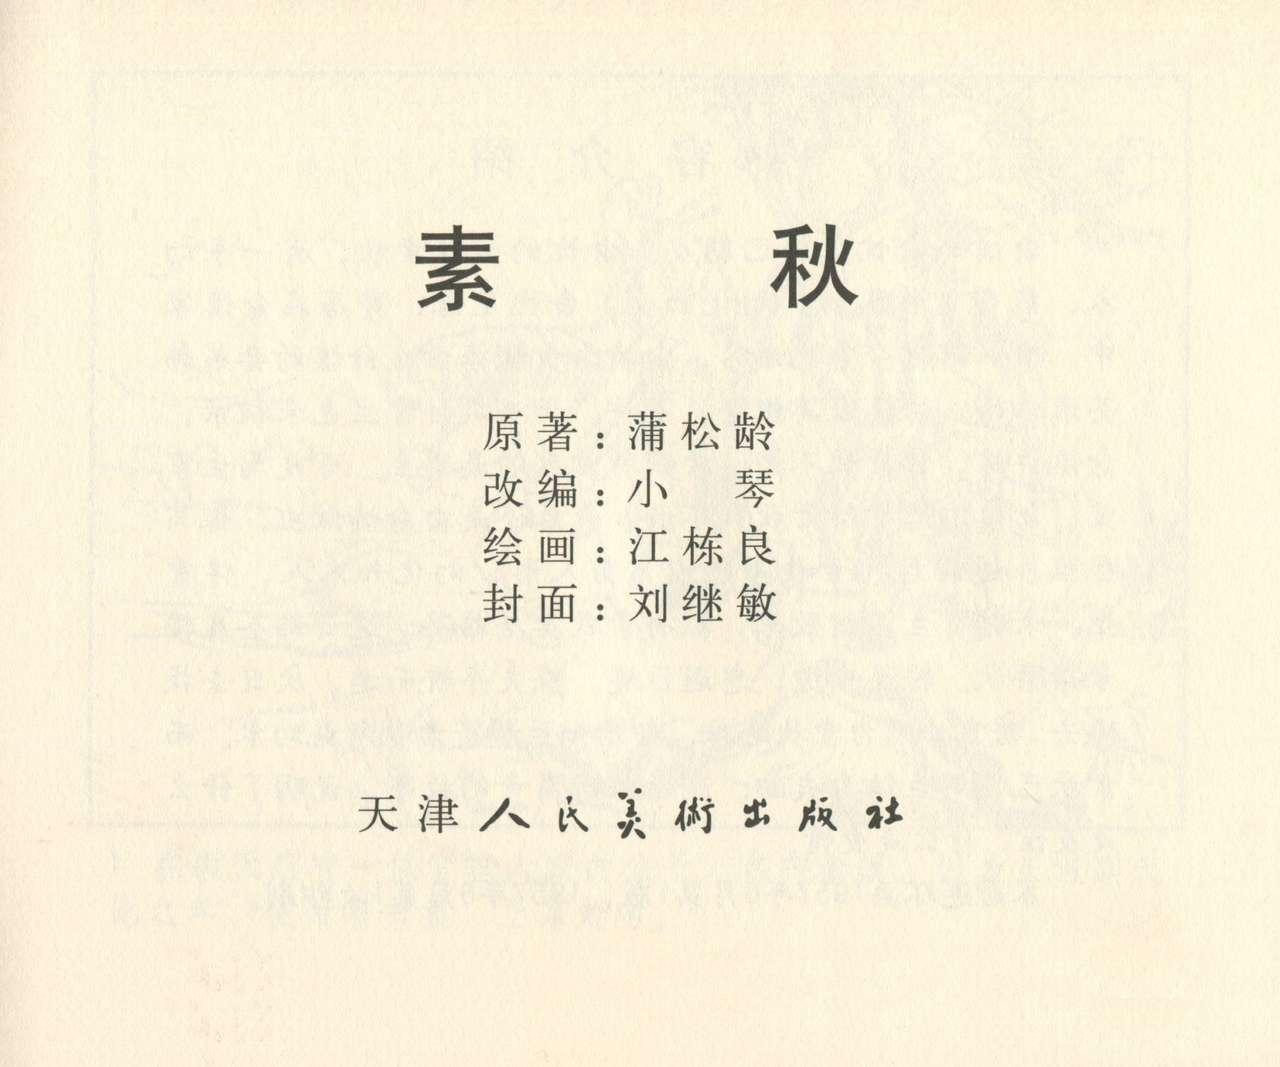 聊斋志异 张玮等绘 天津人民美术出版社 卷二十一 ~ 三十 279